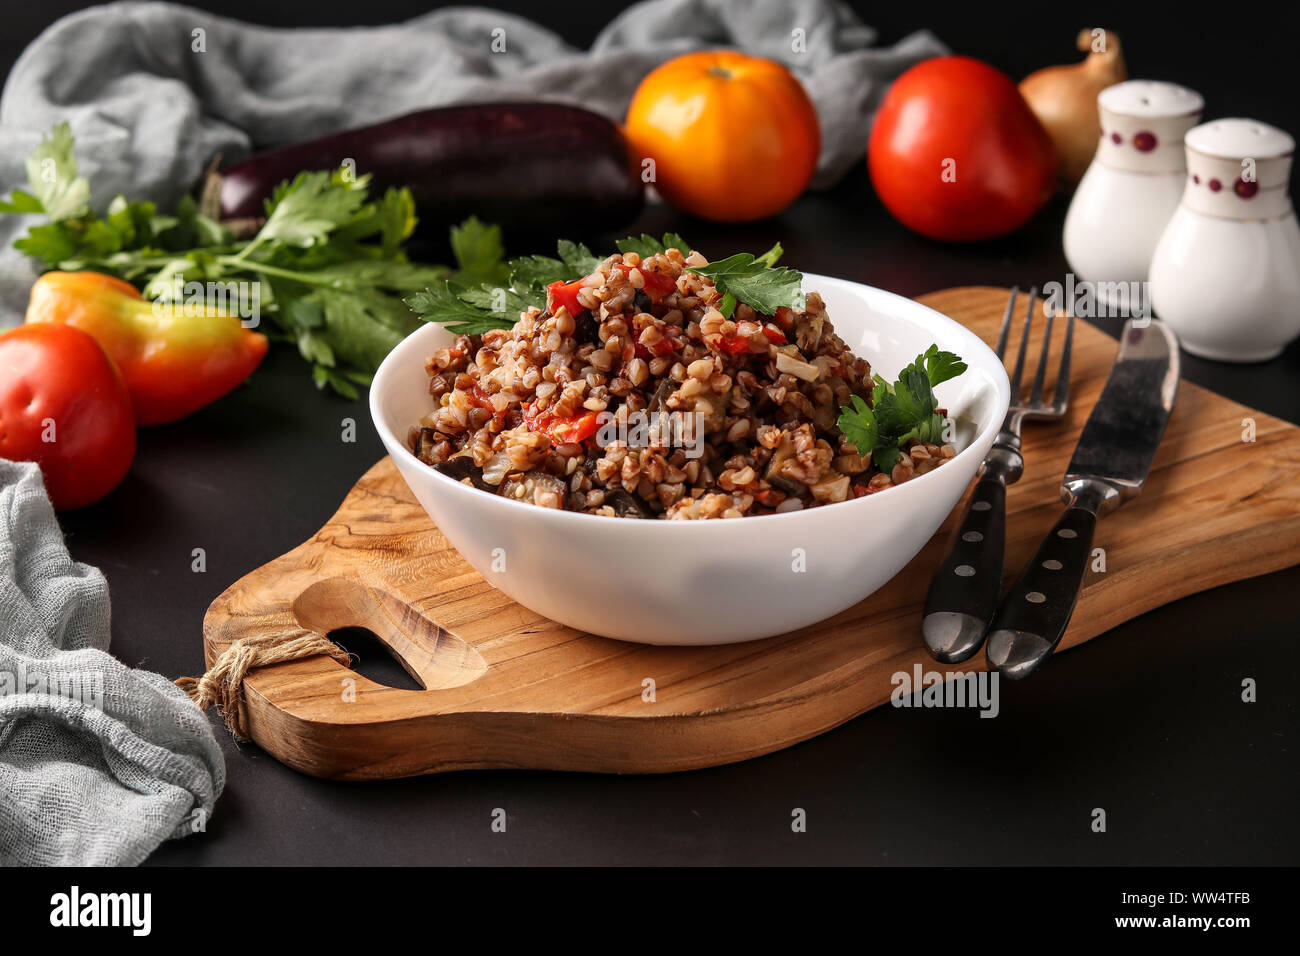 Ancora vita con sani del grano saraceno cucinato con verdure in una ciotola bianco su uno sfondo scuro, un piatto di cucina azerbaigiana, orientamento orizzontale Foto Stock